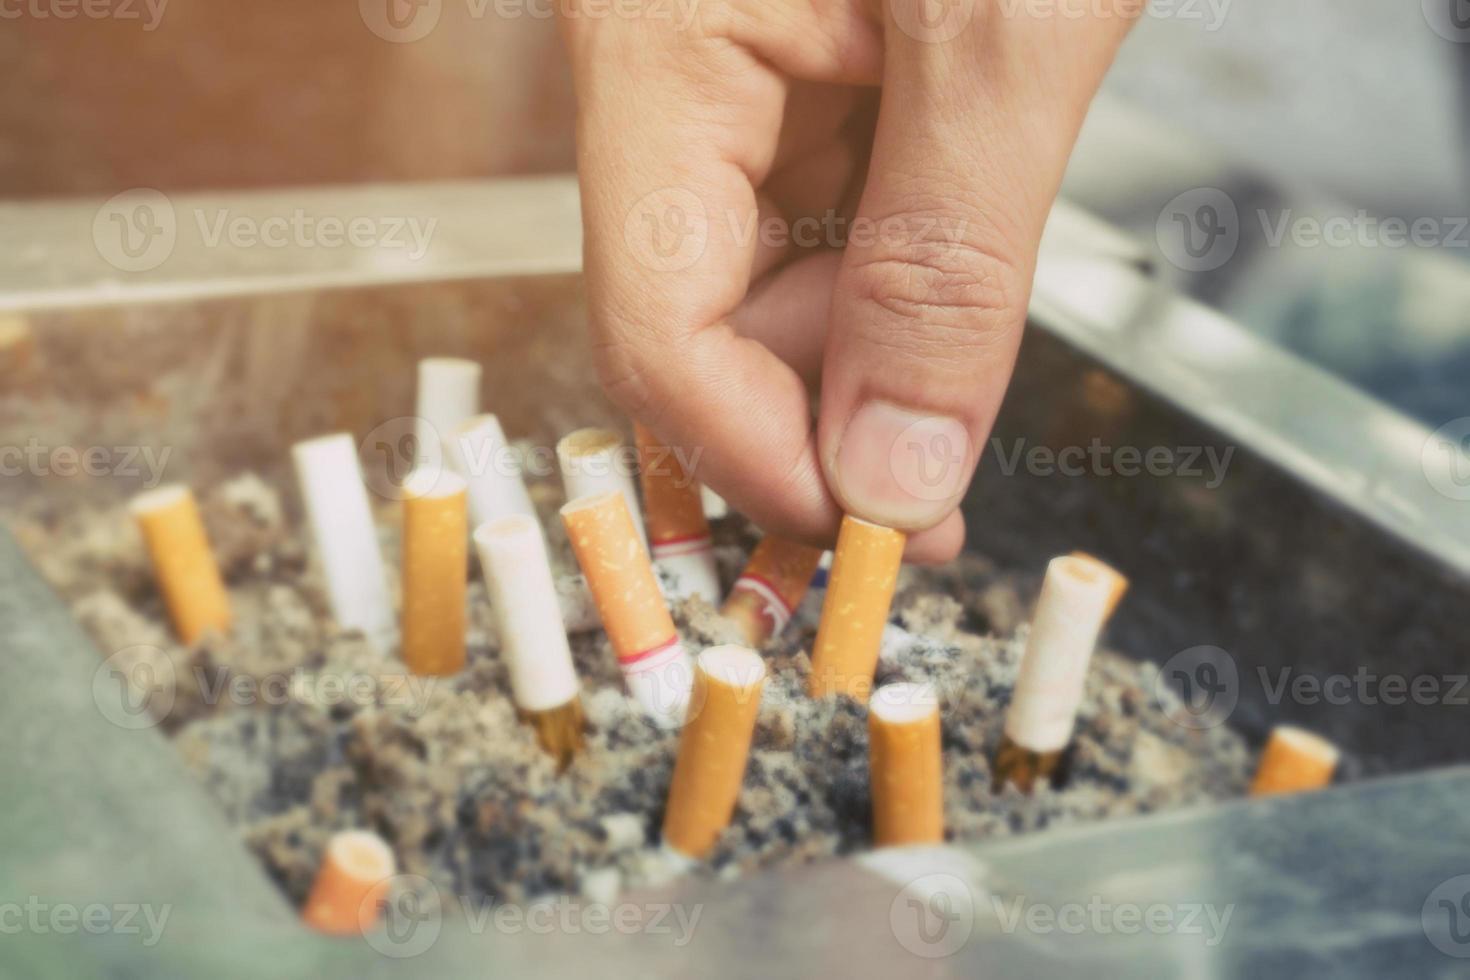 ponta de cigarro no cinzeiro. existem muitos tipos de pontas de cigarro na areia do cinzeiro. um cigarro não é bom para a saúde. foto